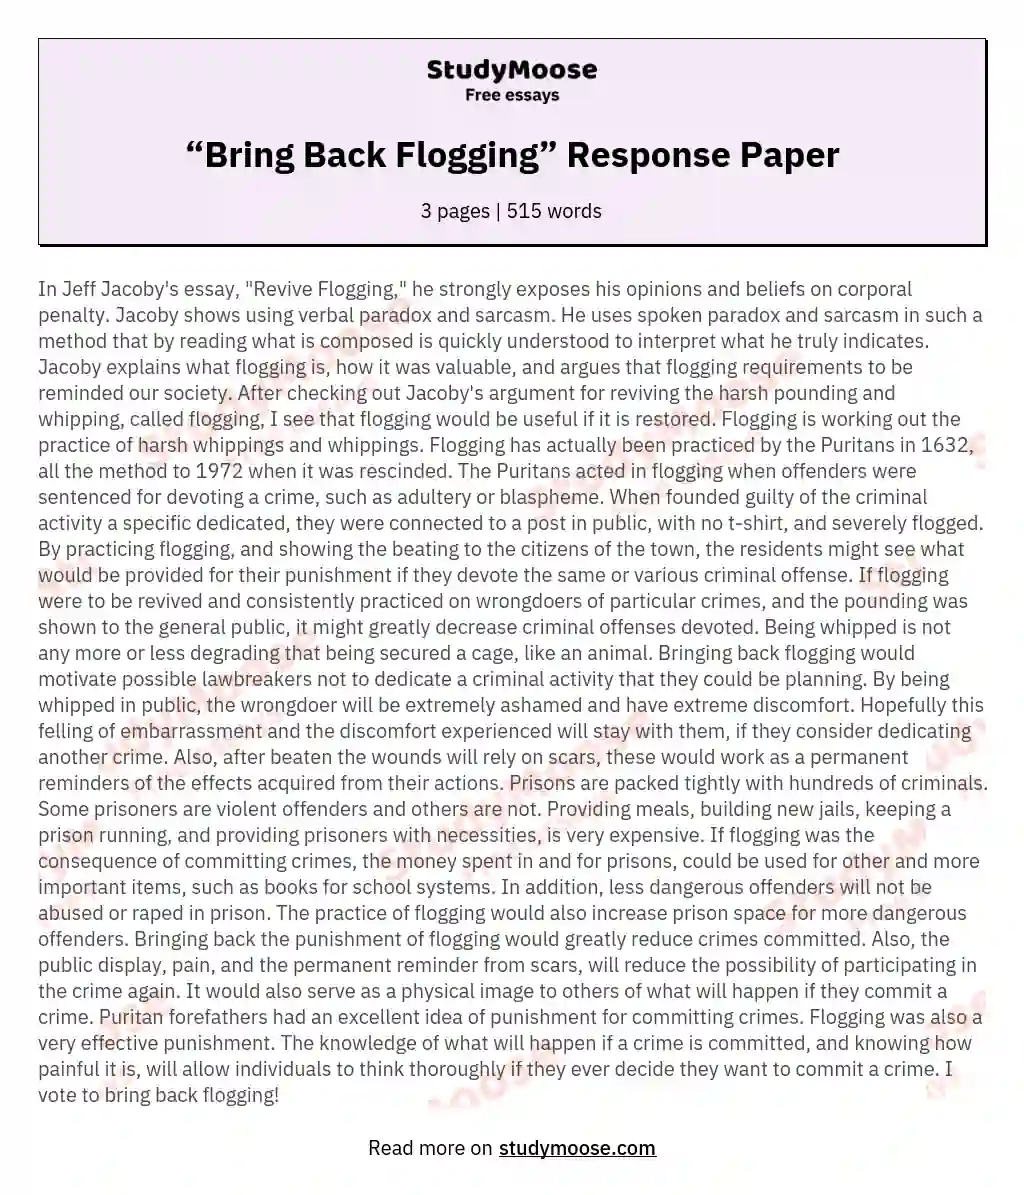 “Bring Back Flogging” Response Paper essay